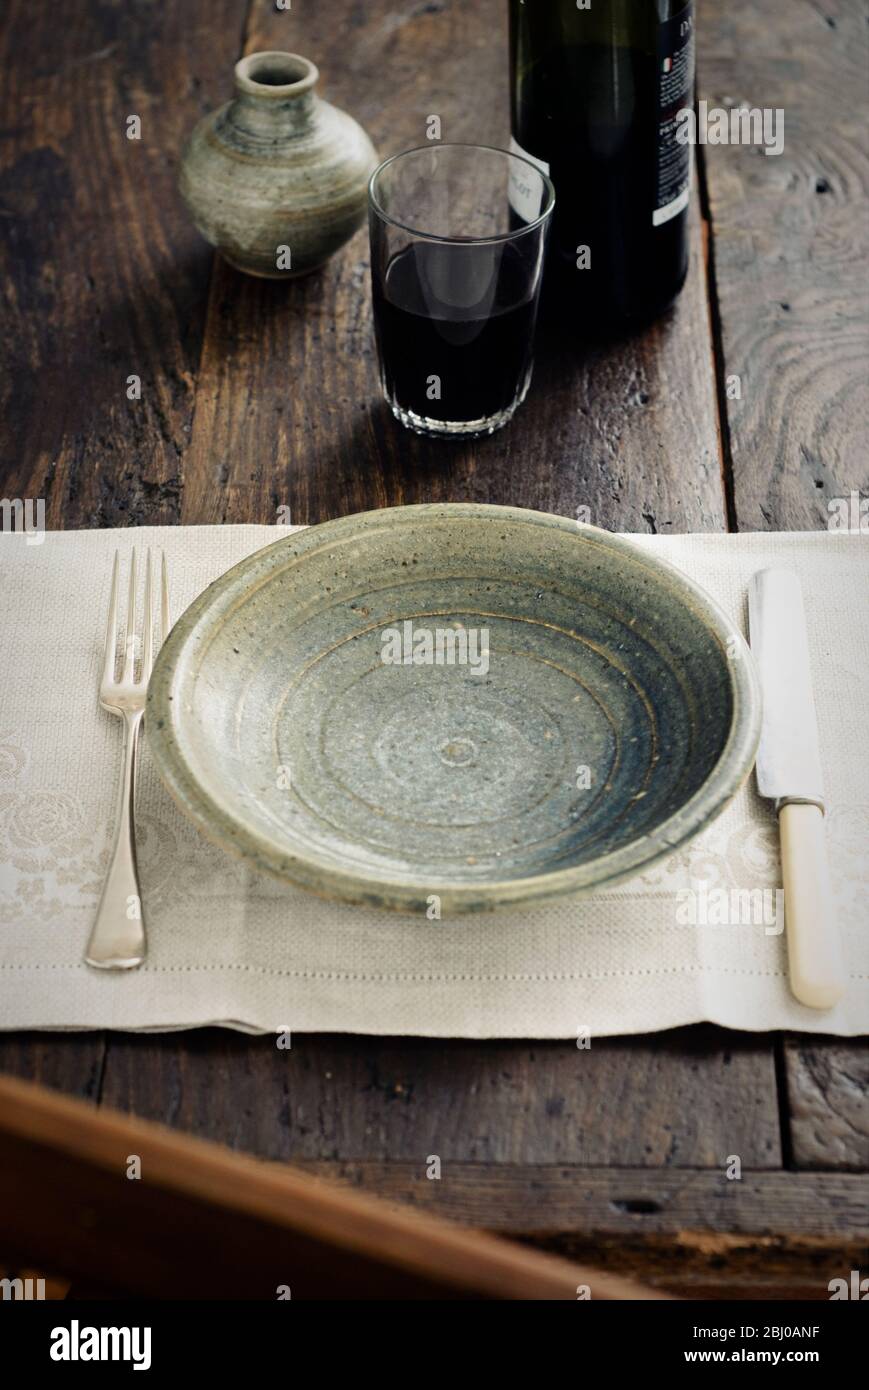 Rustikale Tischkultur mit einem Becher Rotwein vor dem Essen - Stockfoto